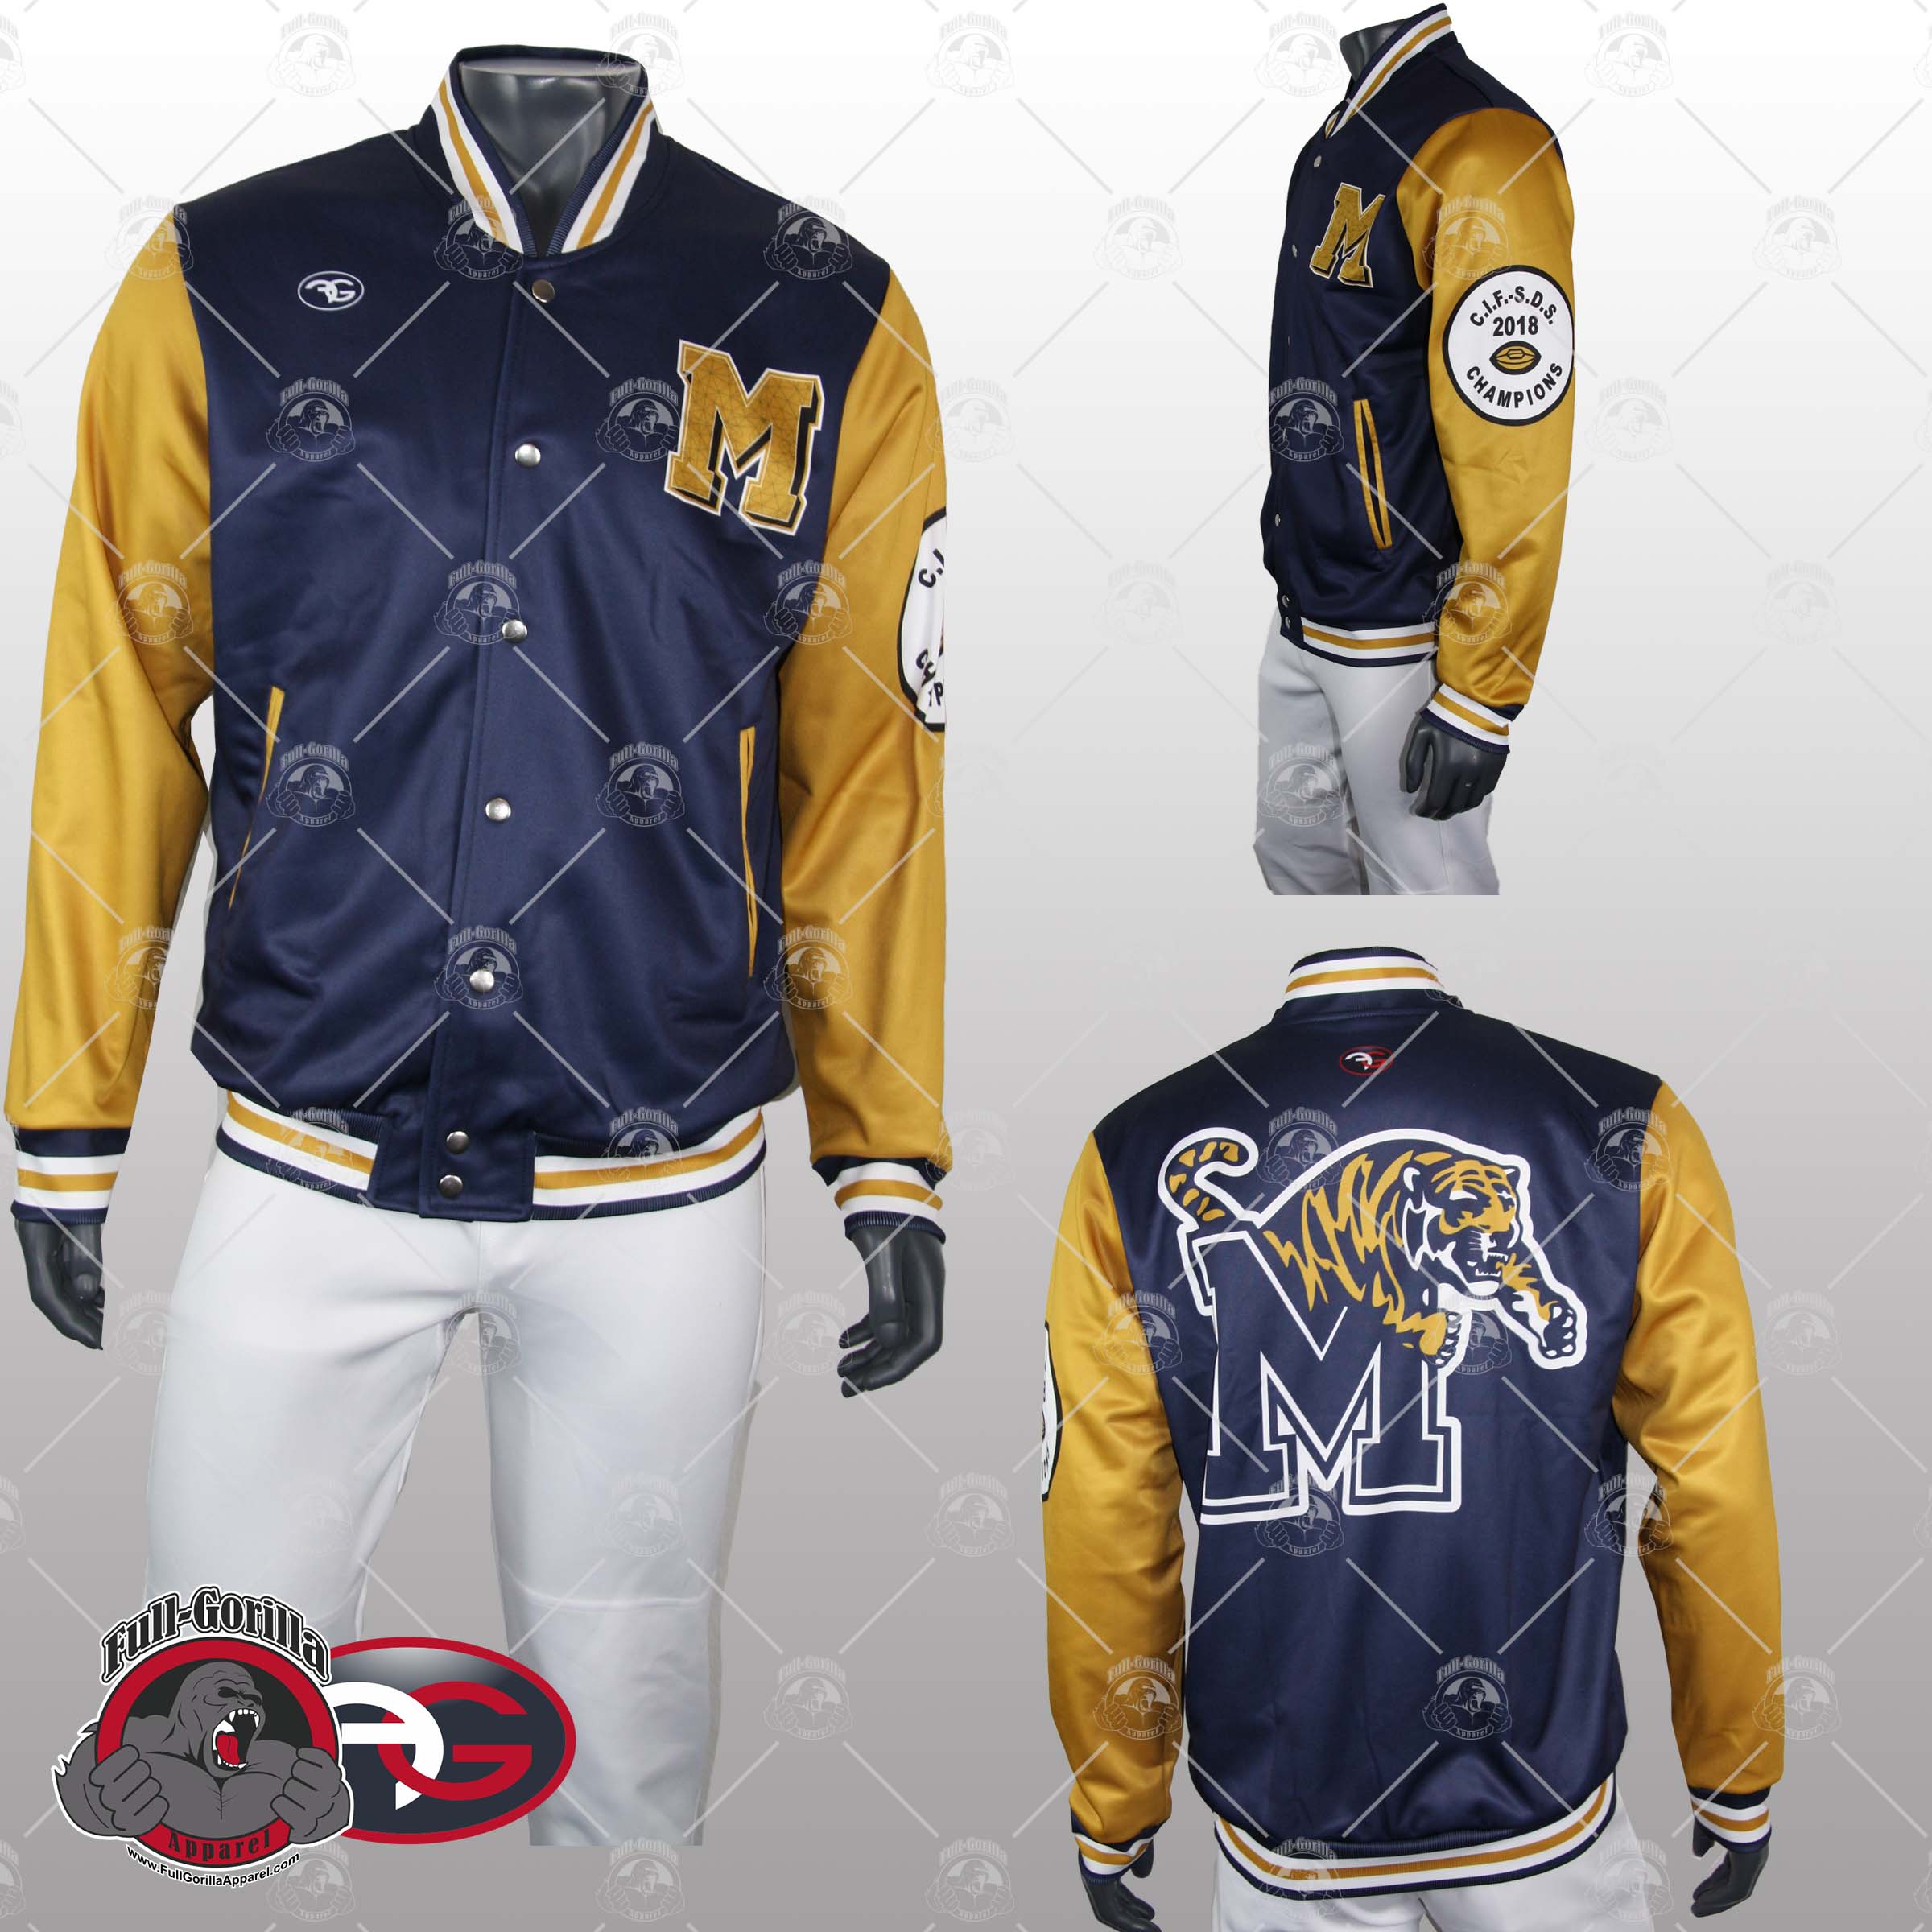 Morse Jacket - Baseball Uniforms